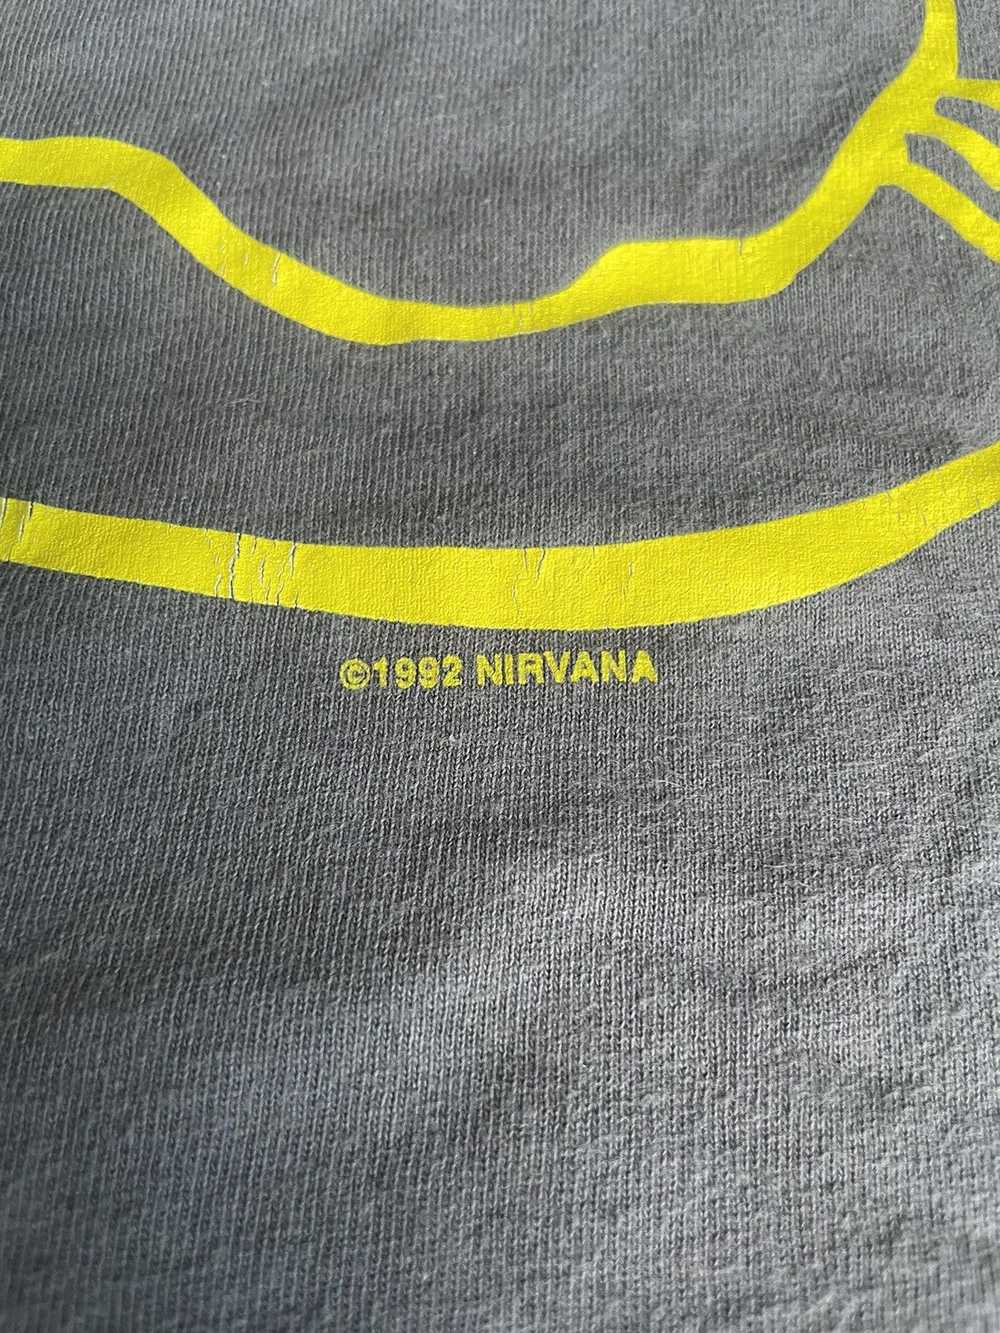 Band Tees × Nirvana × Vintage Vintage Nirvana Tee - image 3